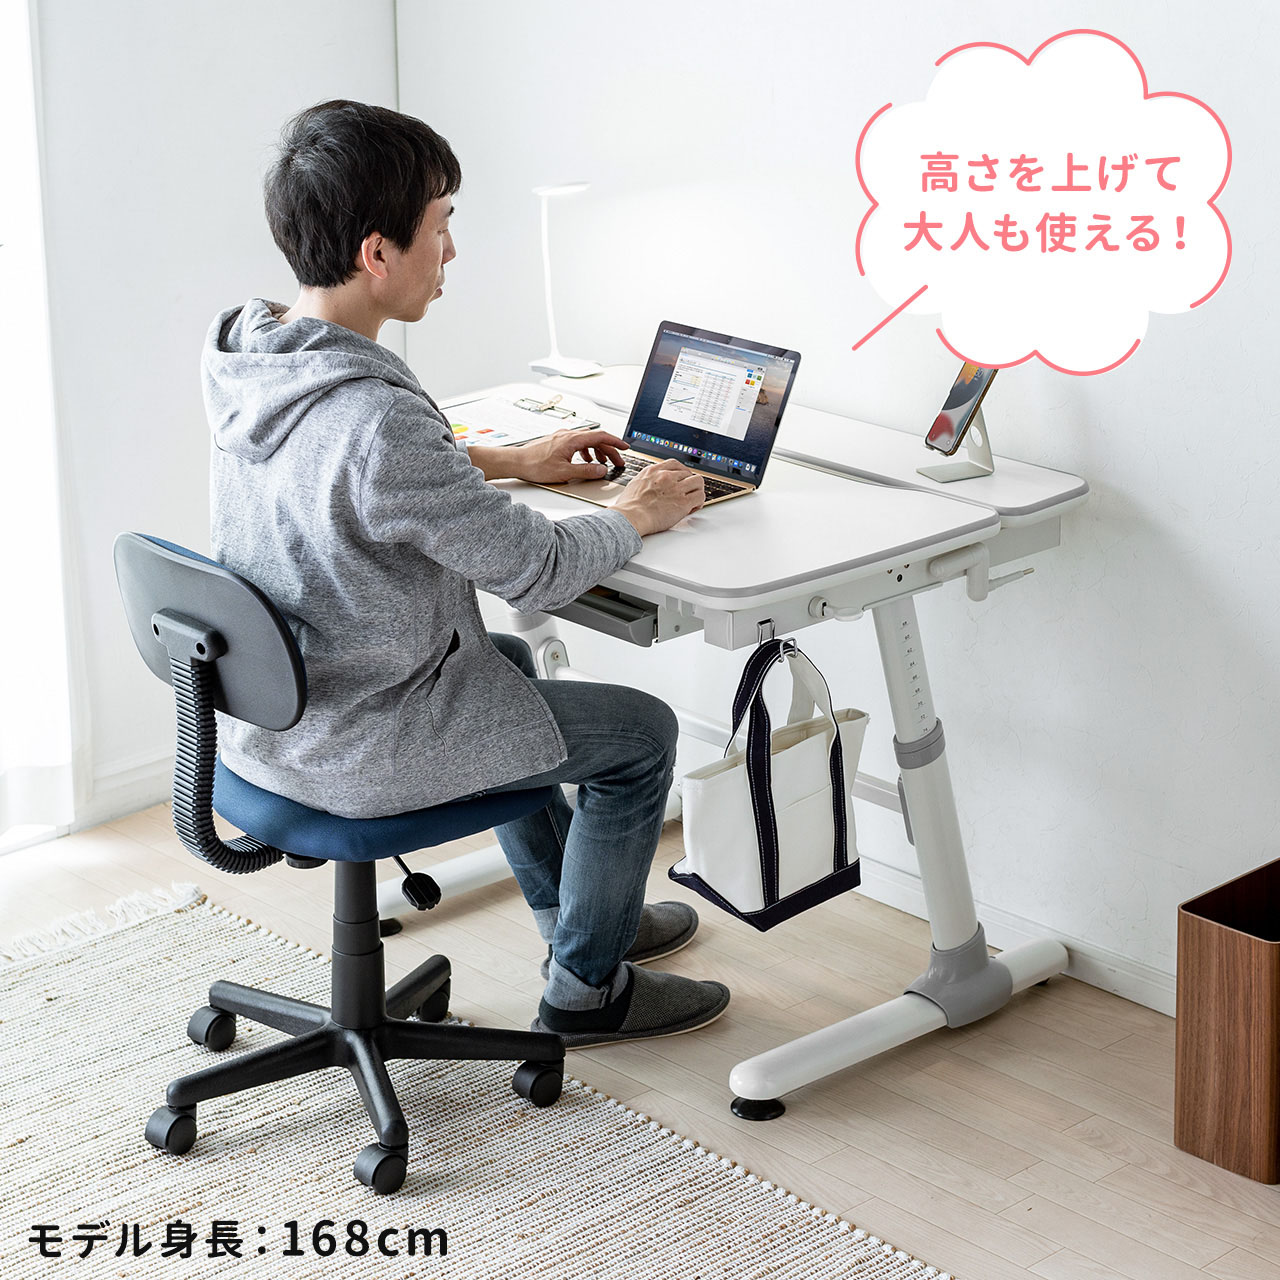 学習机 椅子 セット シンプル 幅98cm コンパクト 引き出し付き 上下昇降 角度調整 学習デスク チェア 勉強机 子供 小学生 パソコンデスク  102-DESKN015WSET1